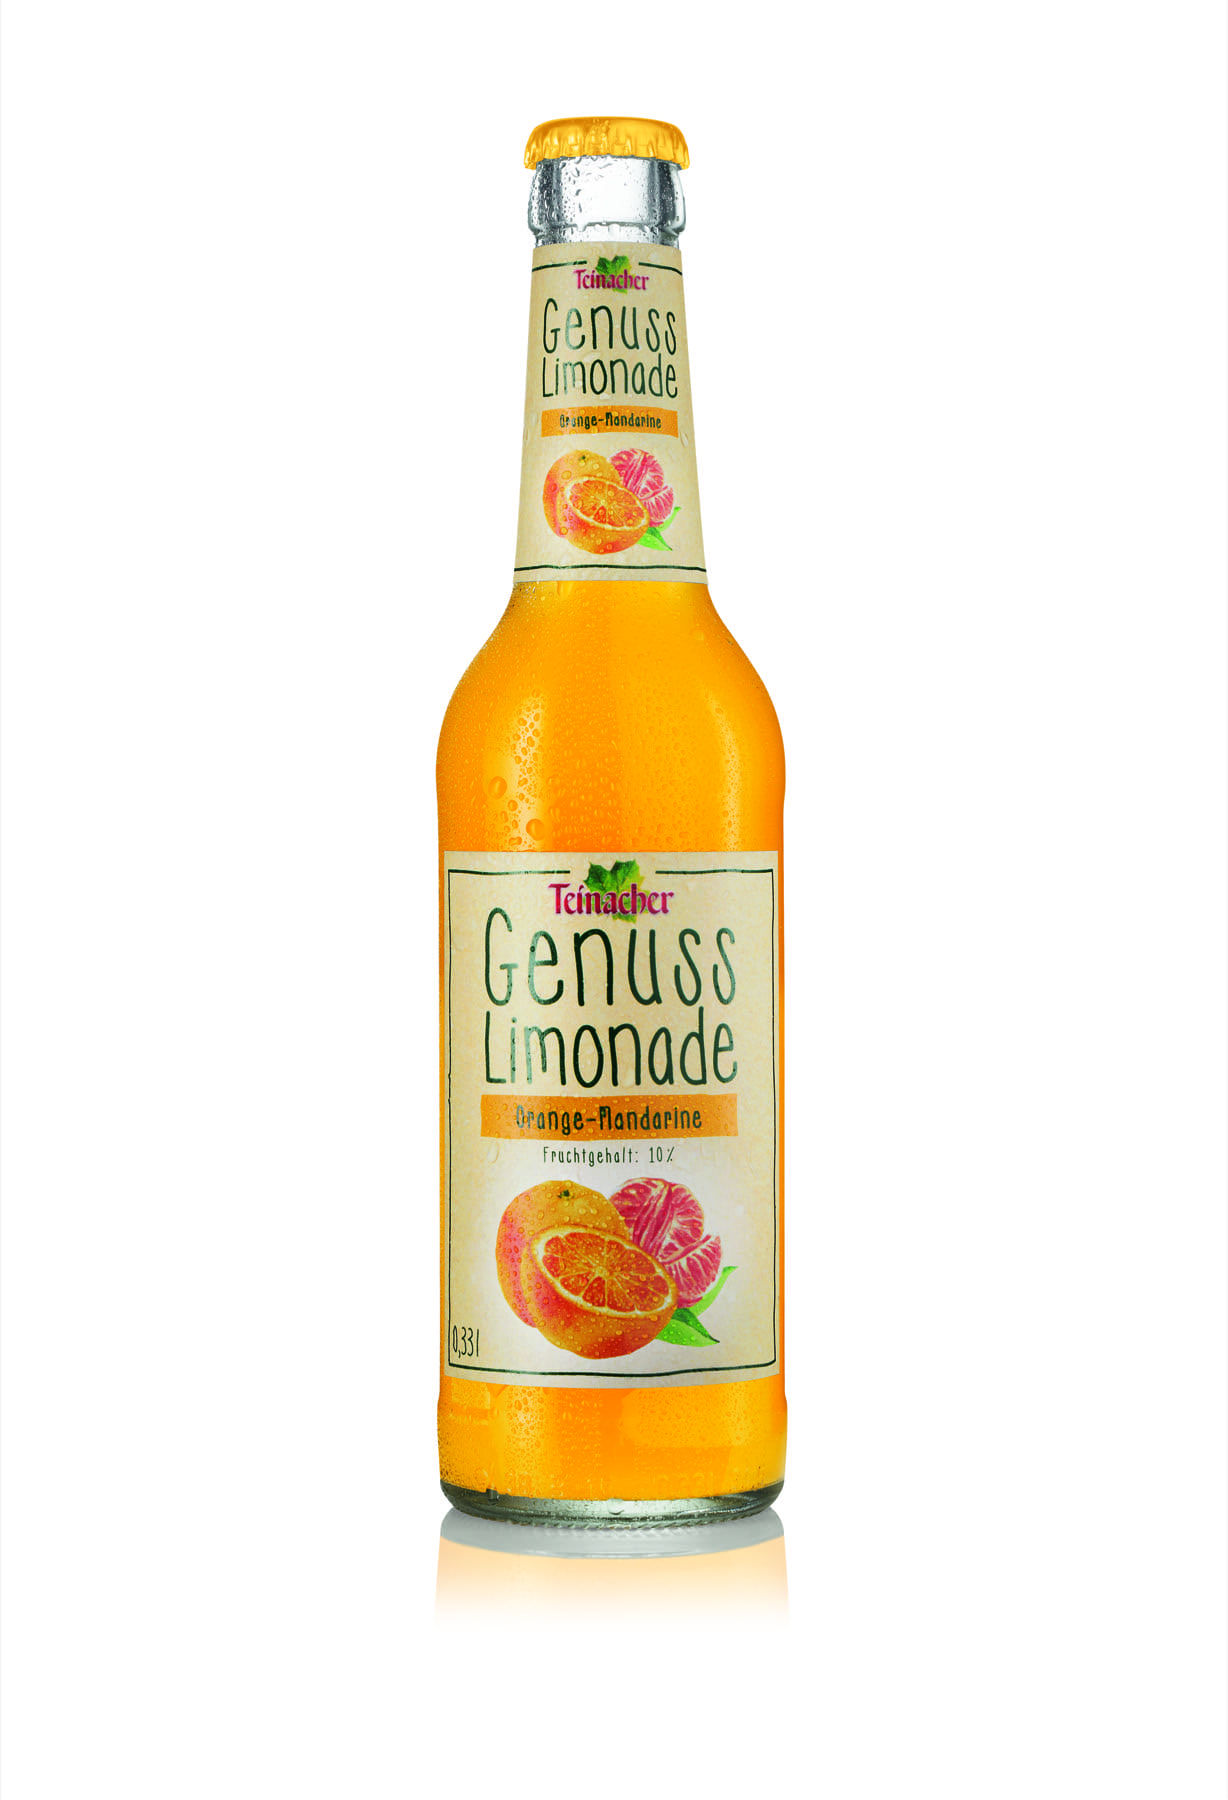 teinacher limonade orange mandarine